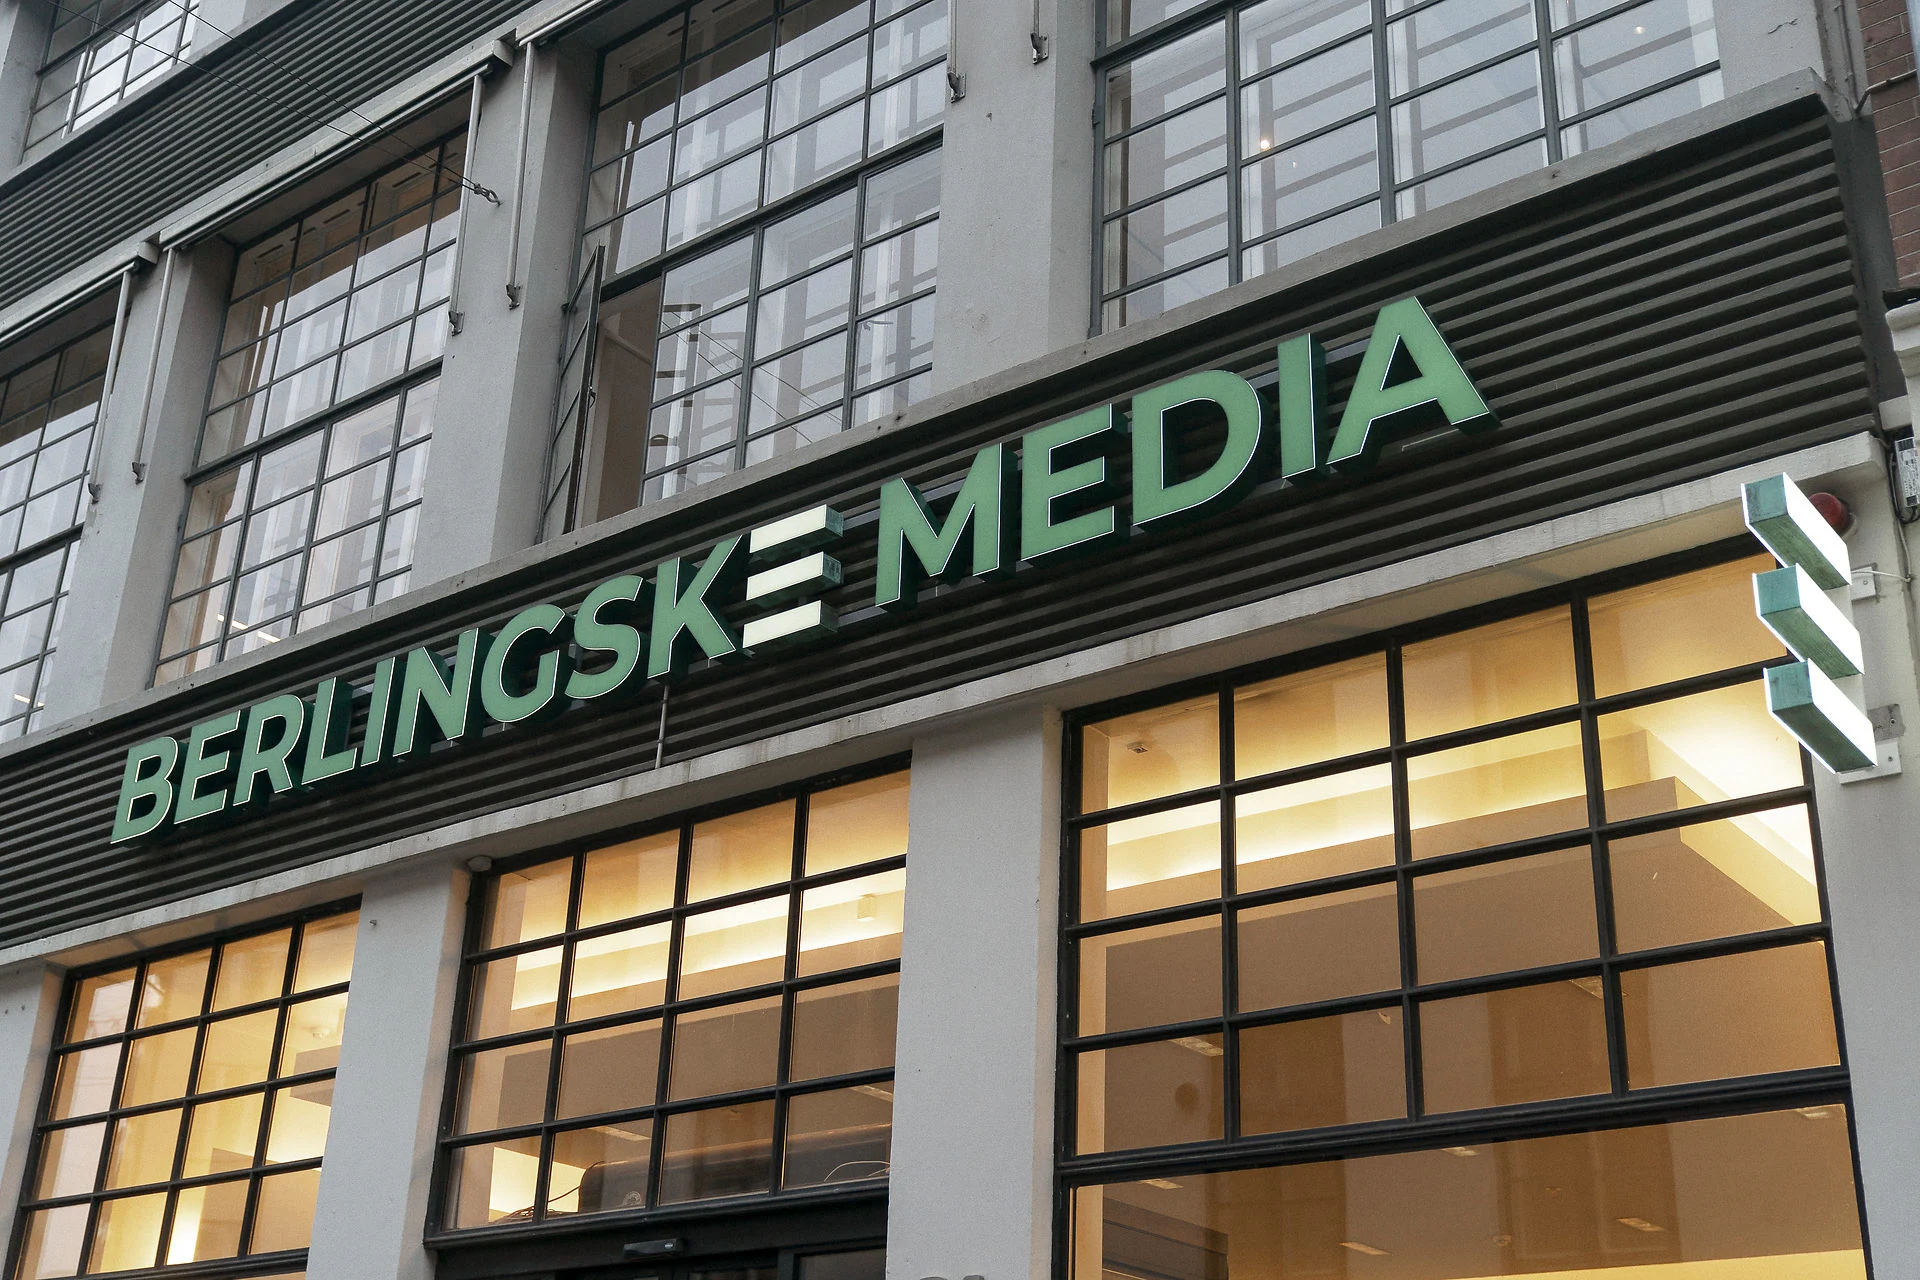 Logo on building Berlingske Media